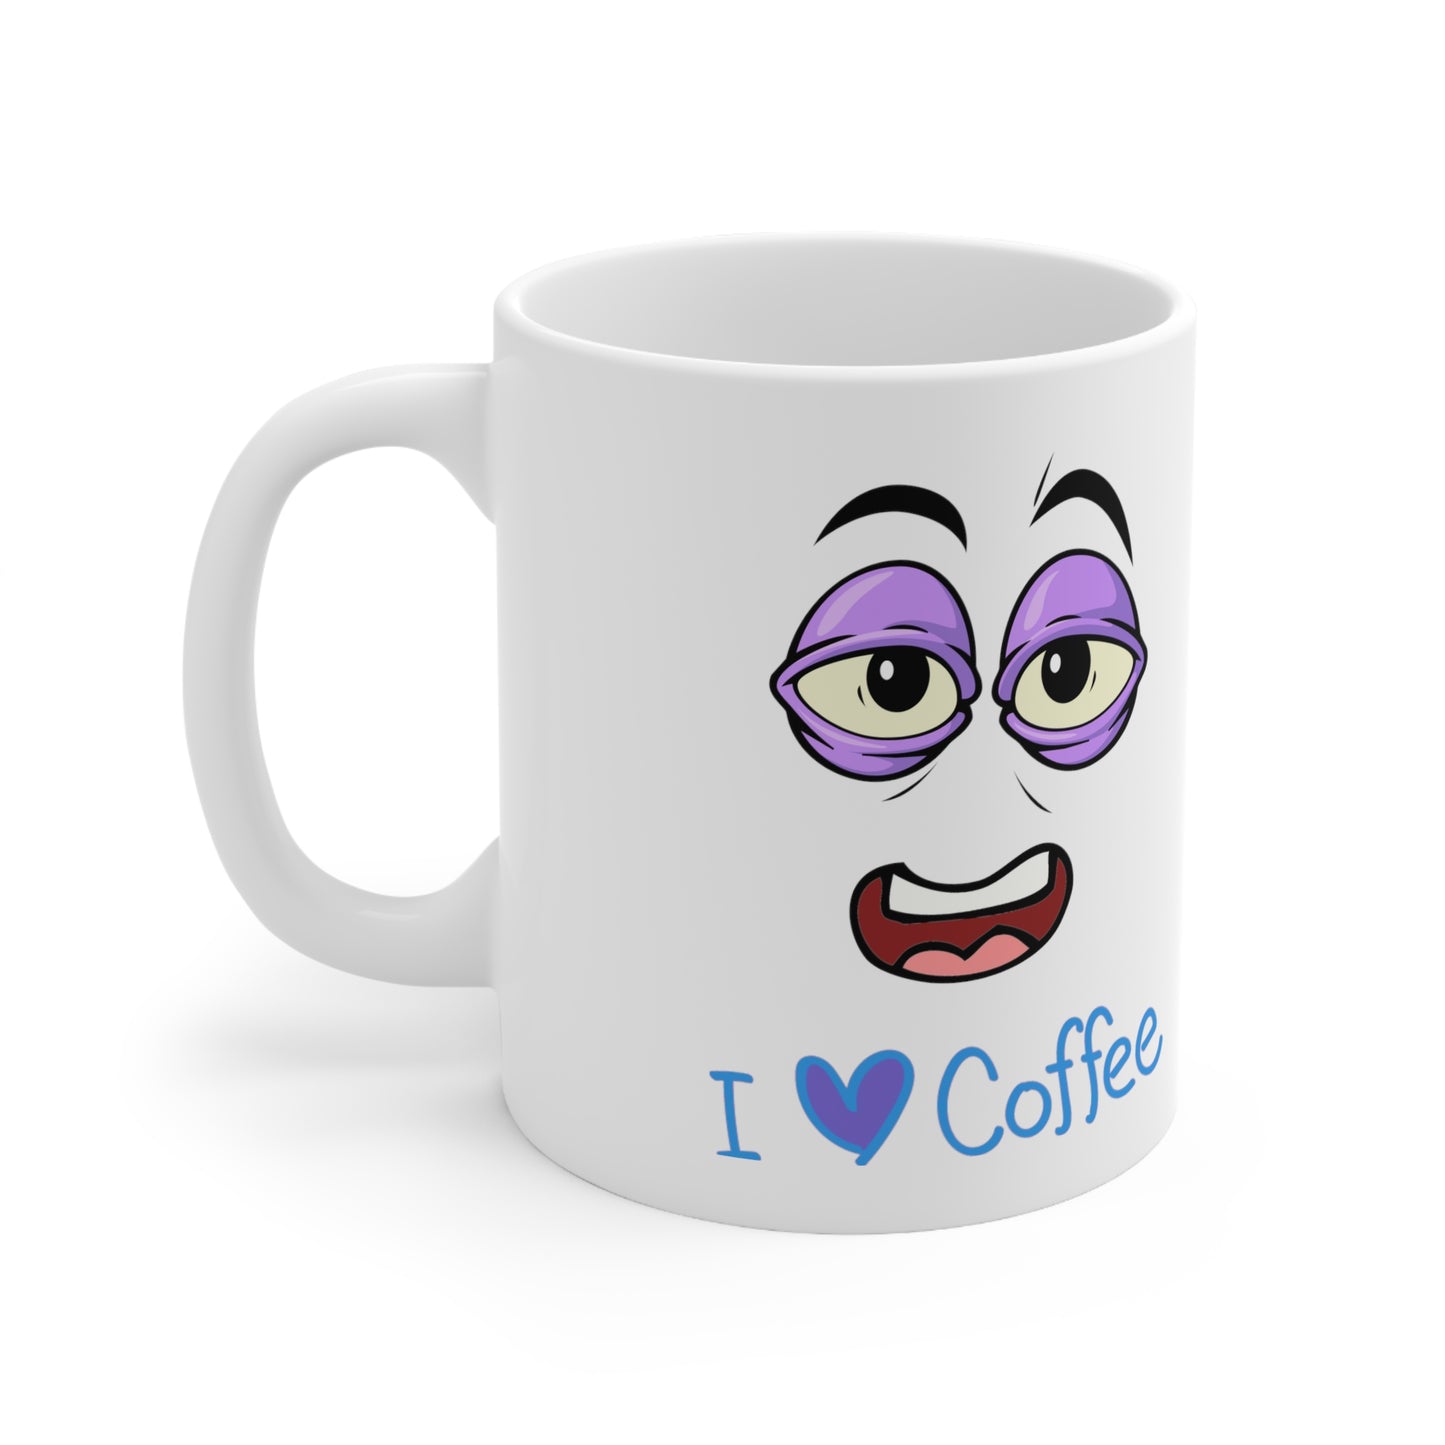 “I Love Coffee” Ceramic Mug 11oz